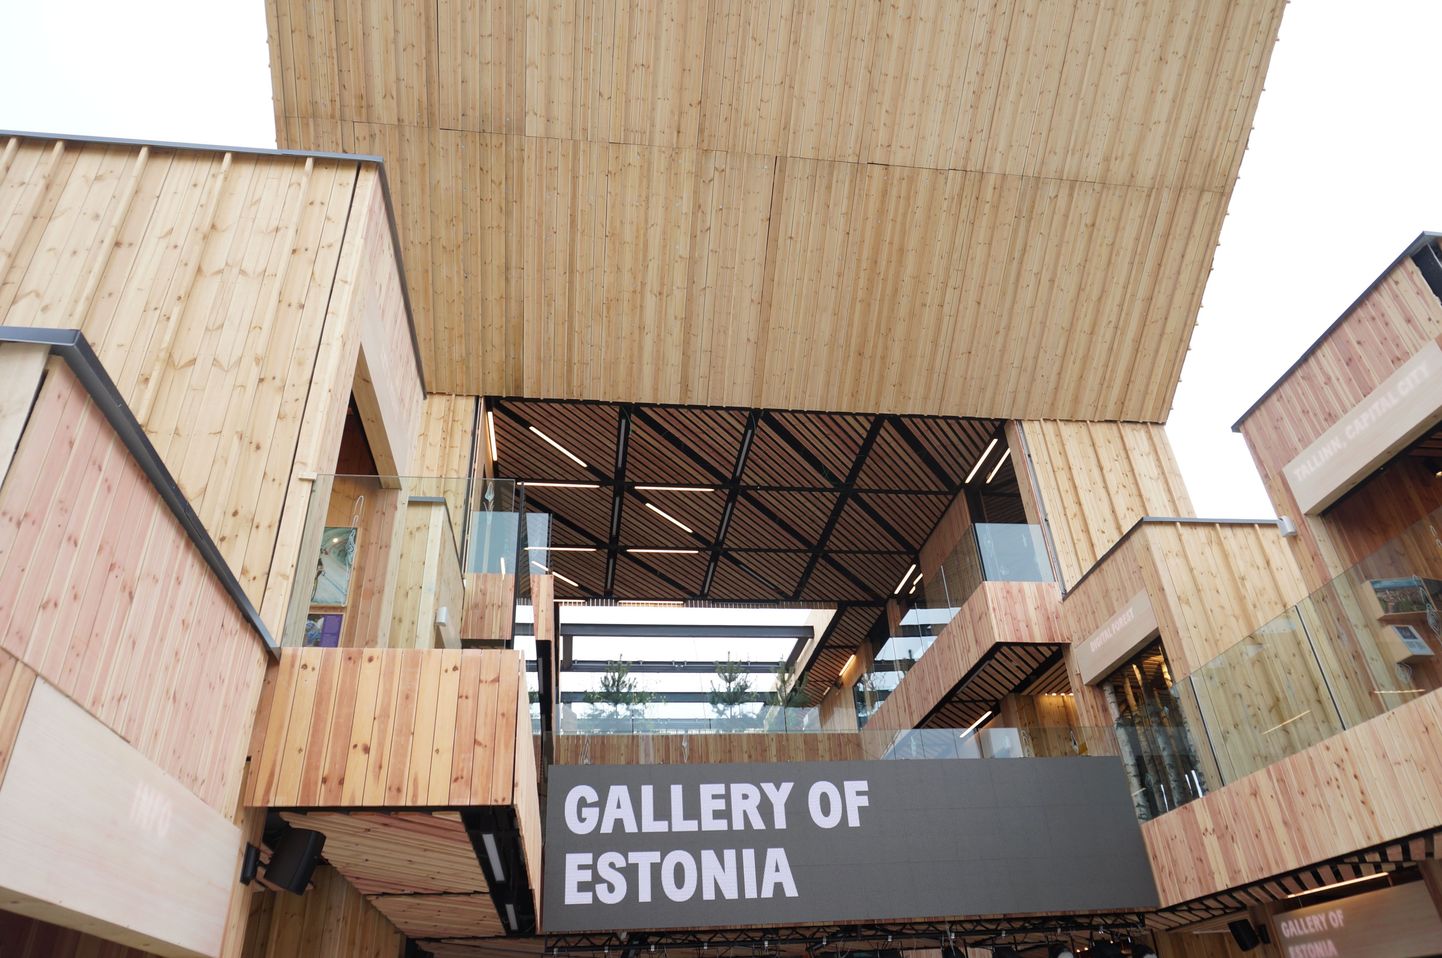 Eesti paviljon. EXPO 2015